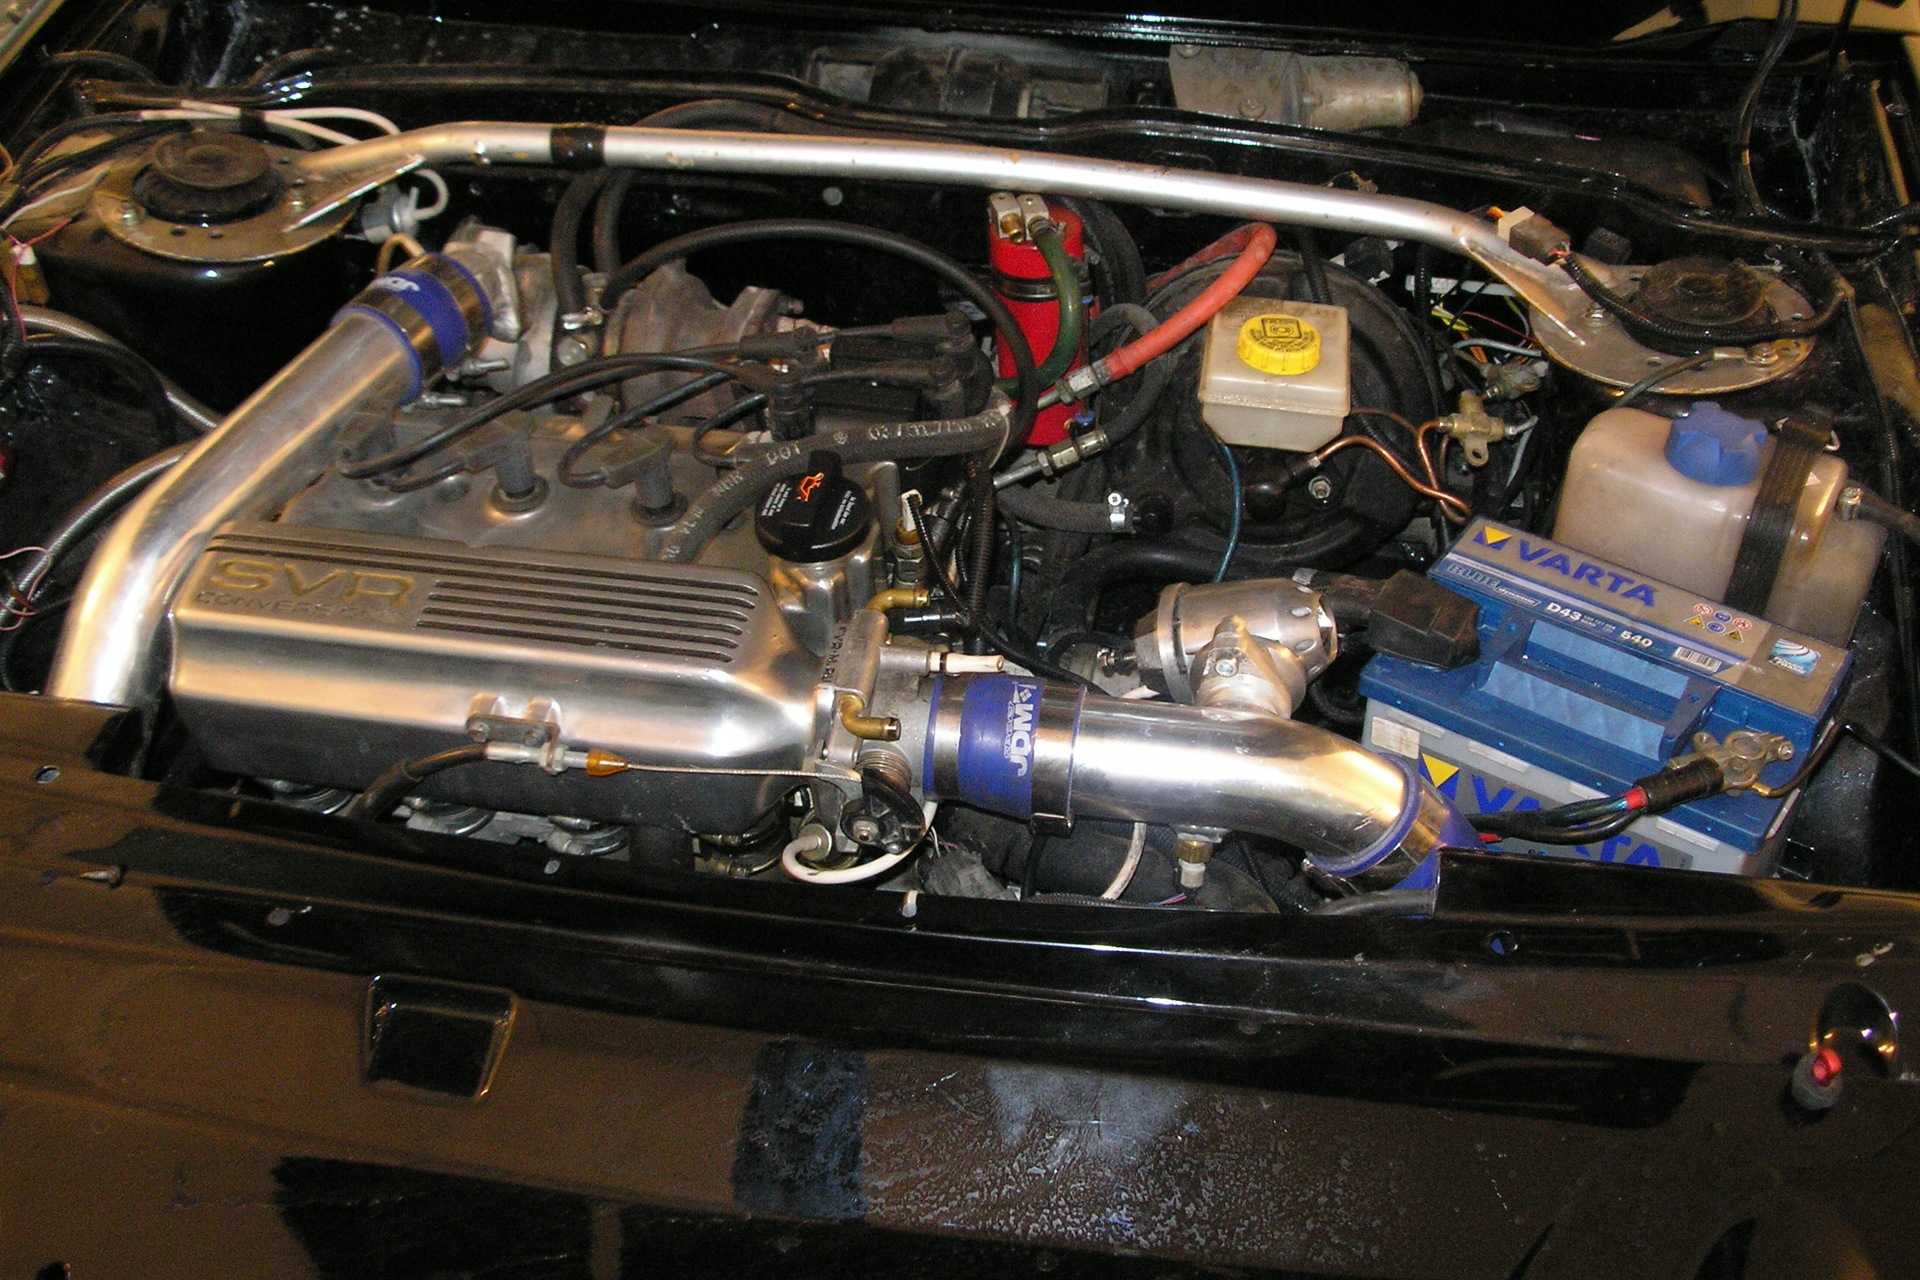 Ваз 2101 - тюнинг двигателя — лада мастер